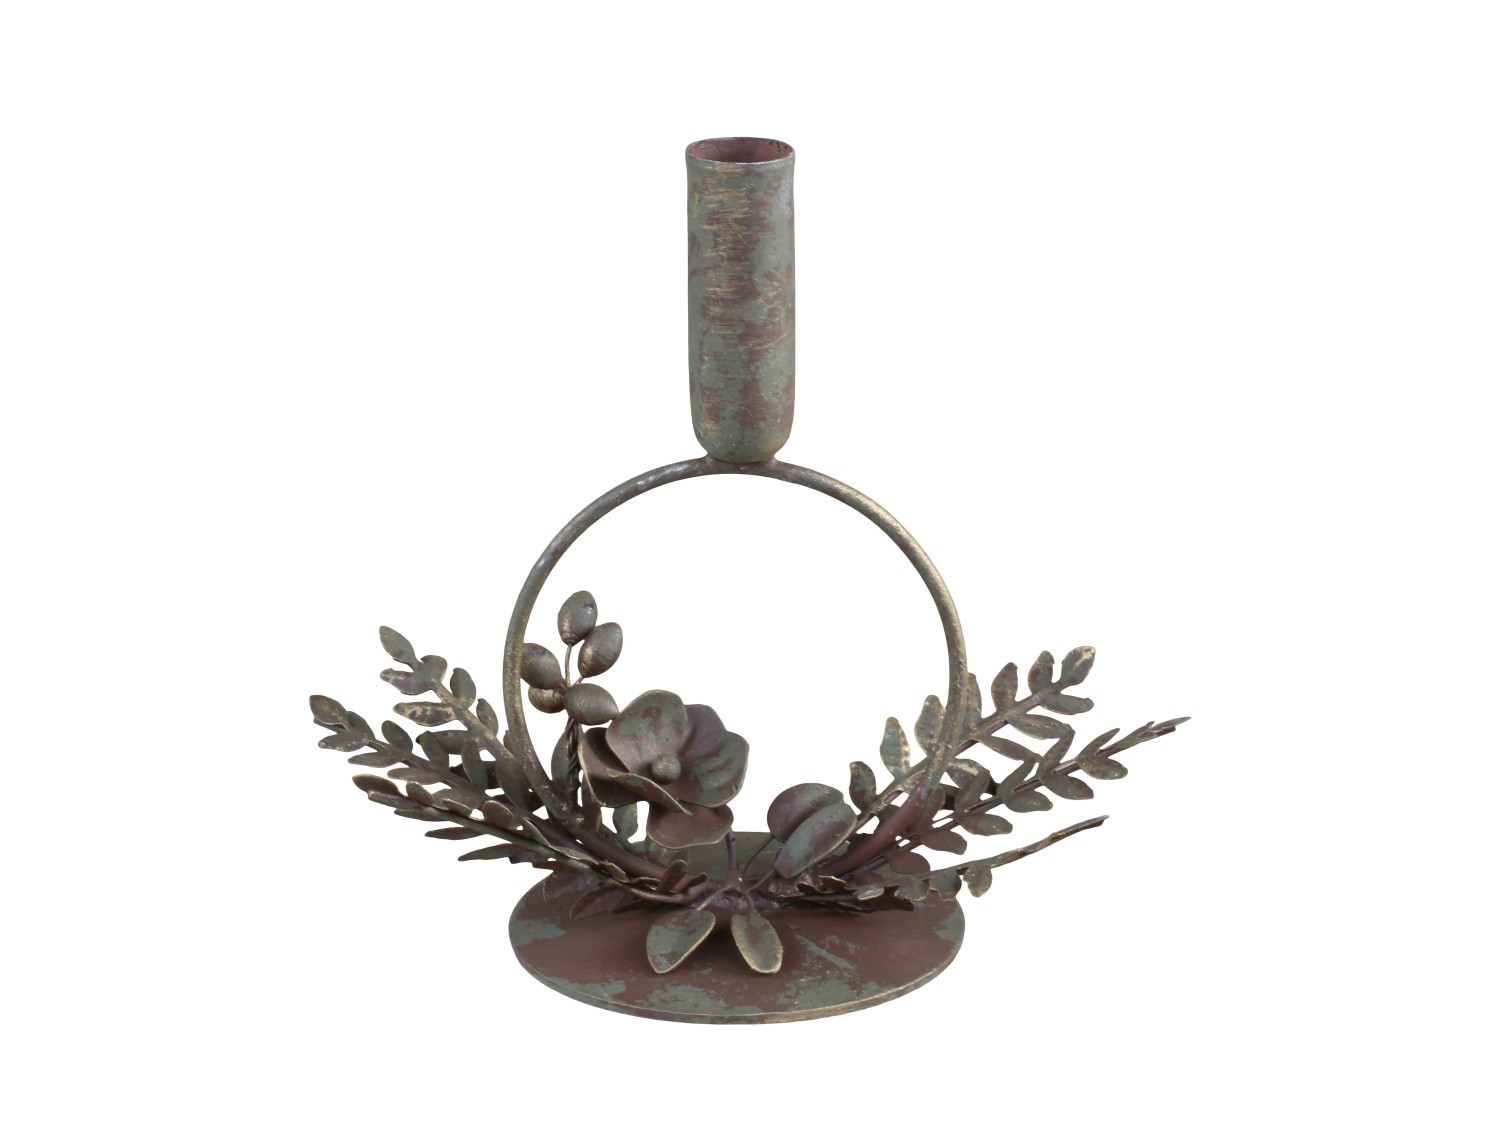 Mosazný antik kovový svícen na úzkou svíčku Leite - 19*12*18cm Chic Antique